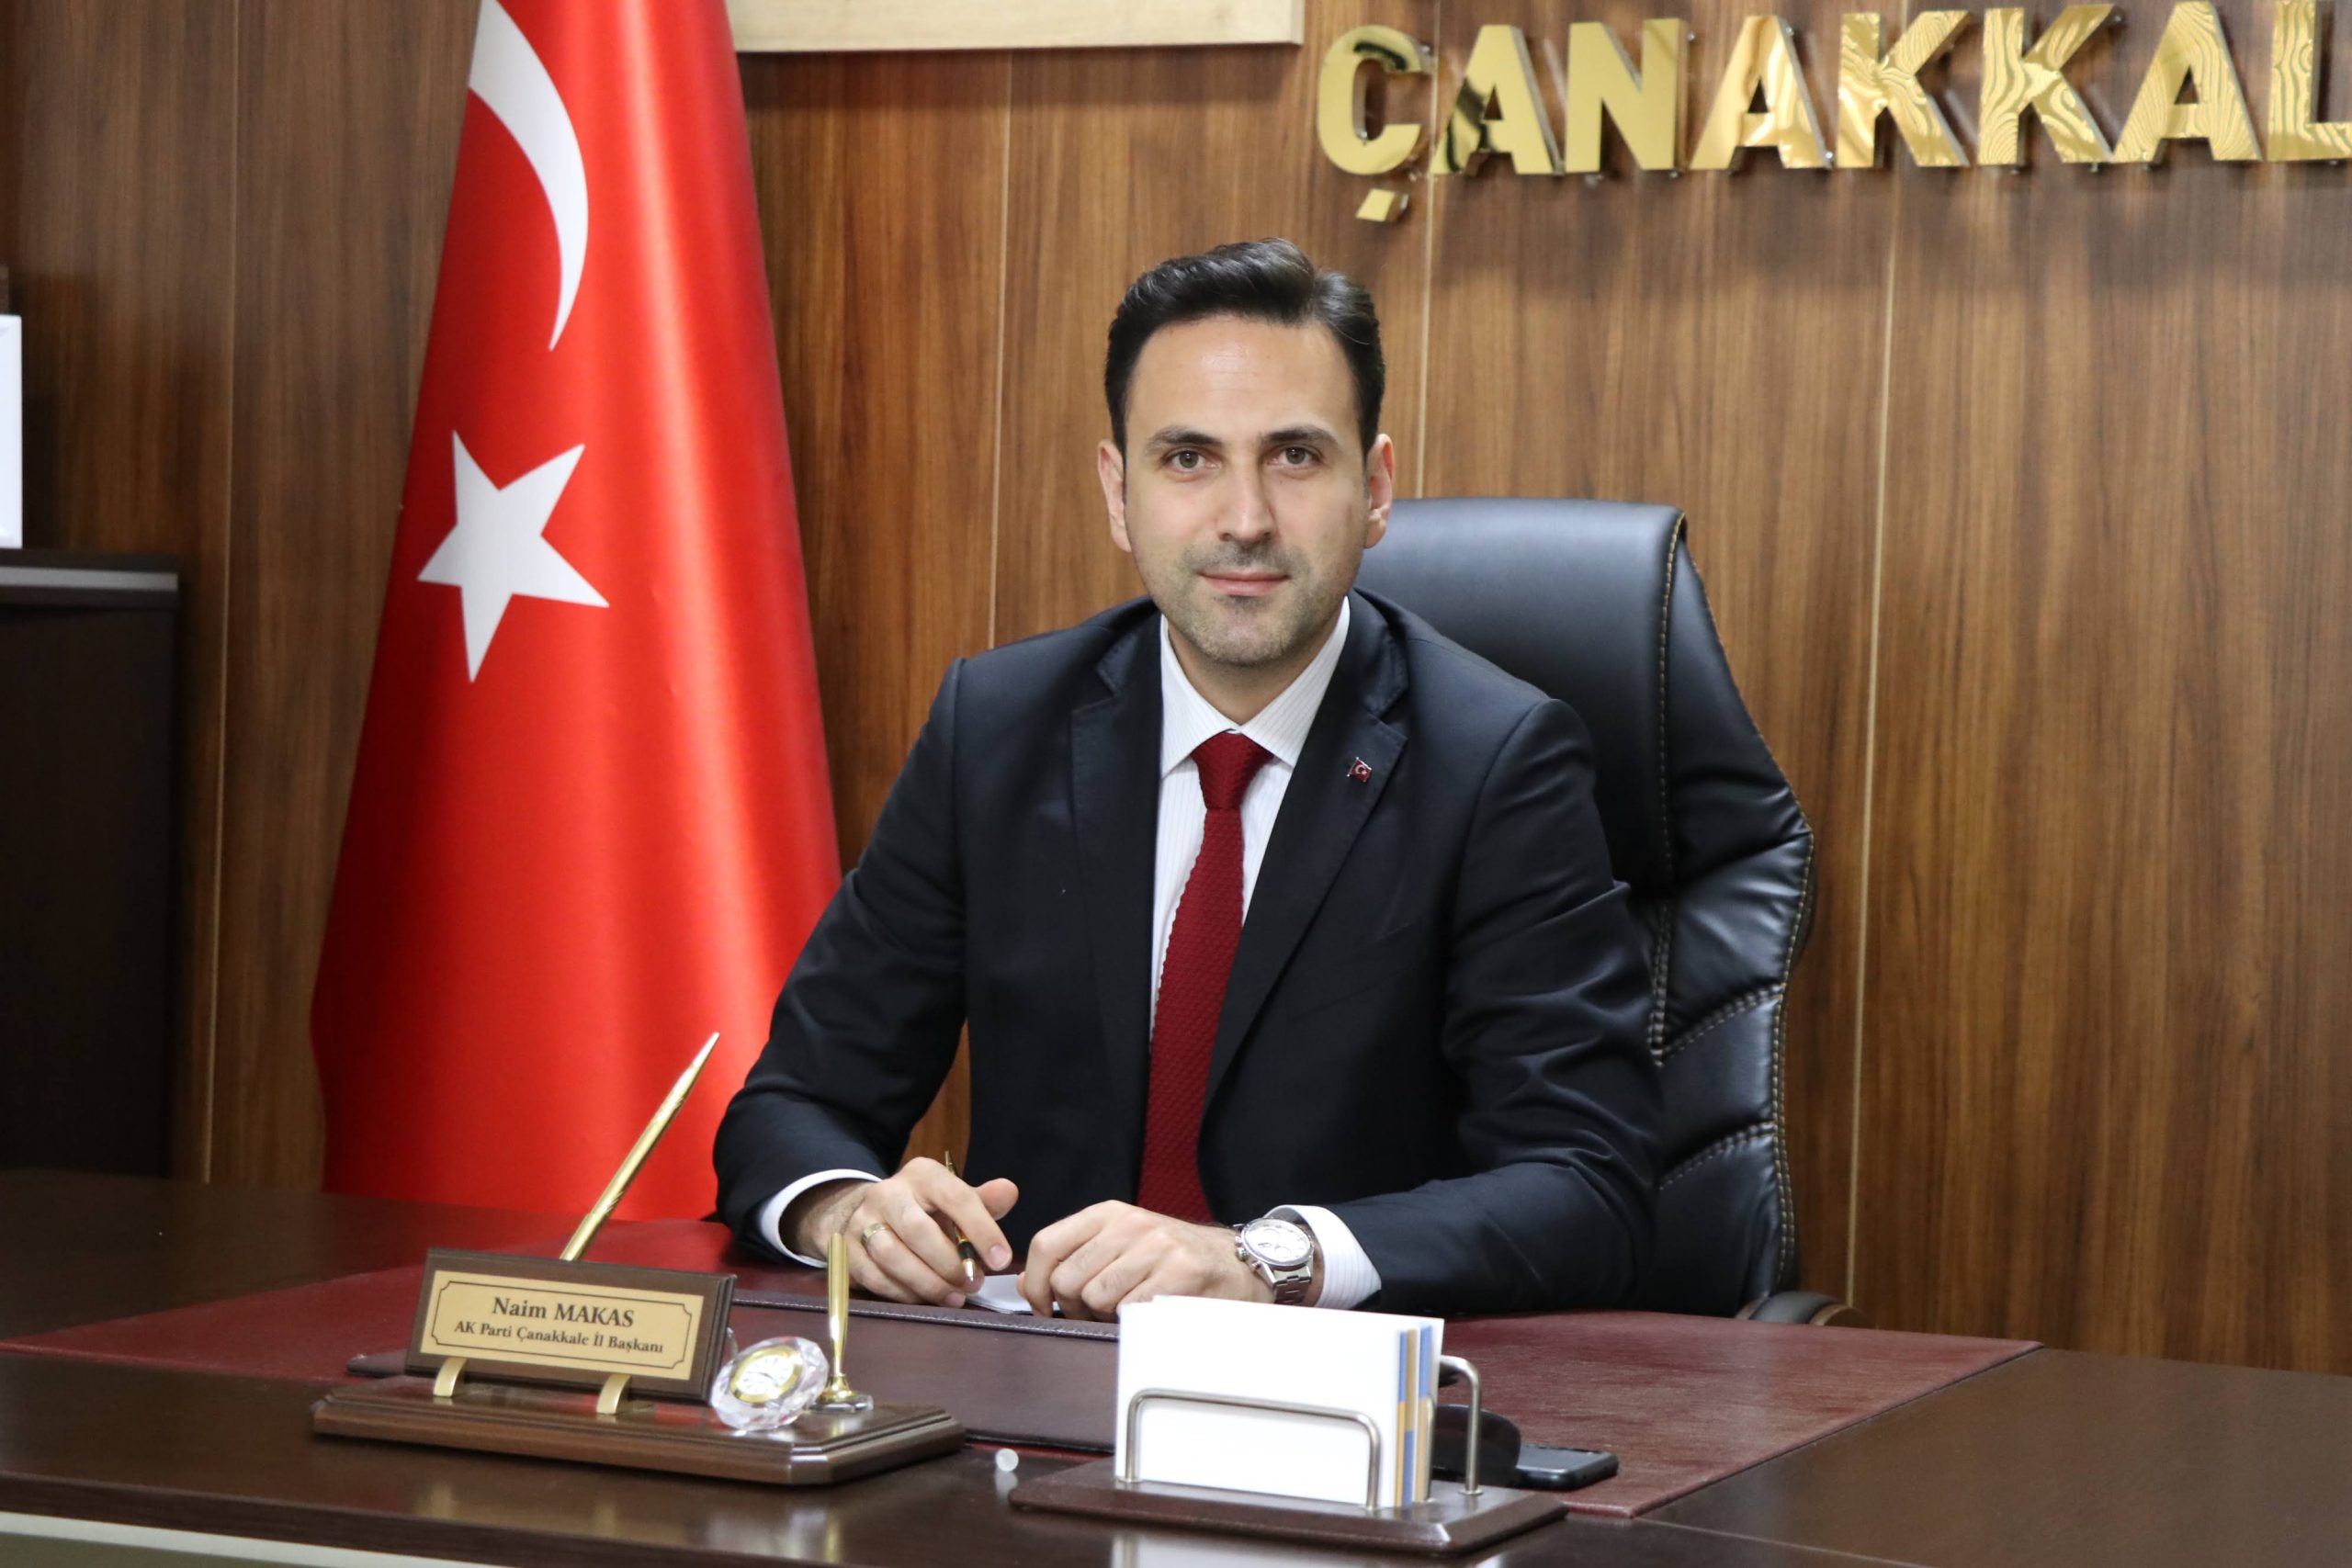 AK Parti Çanakkale İl Başkanı Naim Makas, 14 Mayıs'ta yapılacak olan Genel Seçimler ve seçim sürecine dair açıklamalarda bulundu.